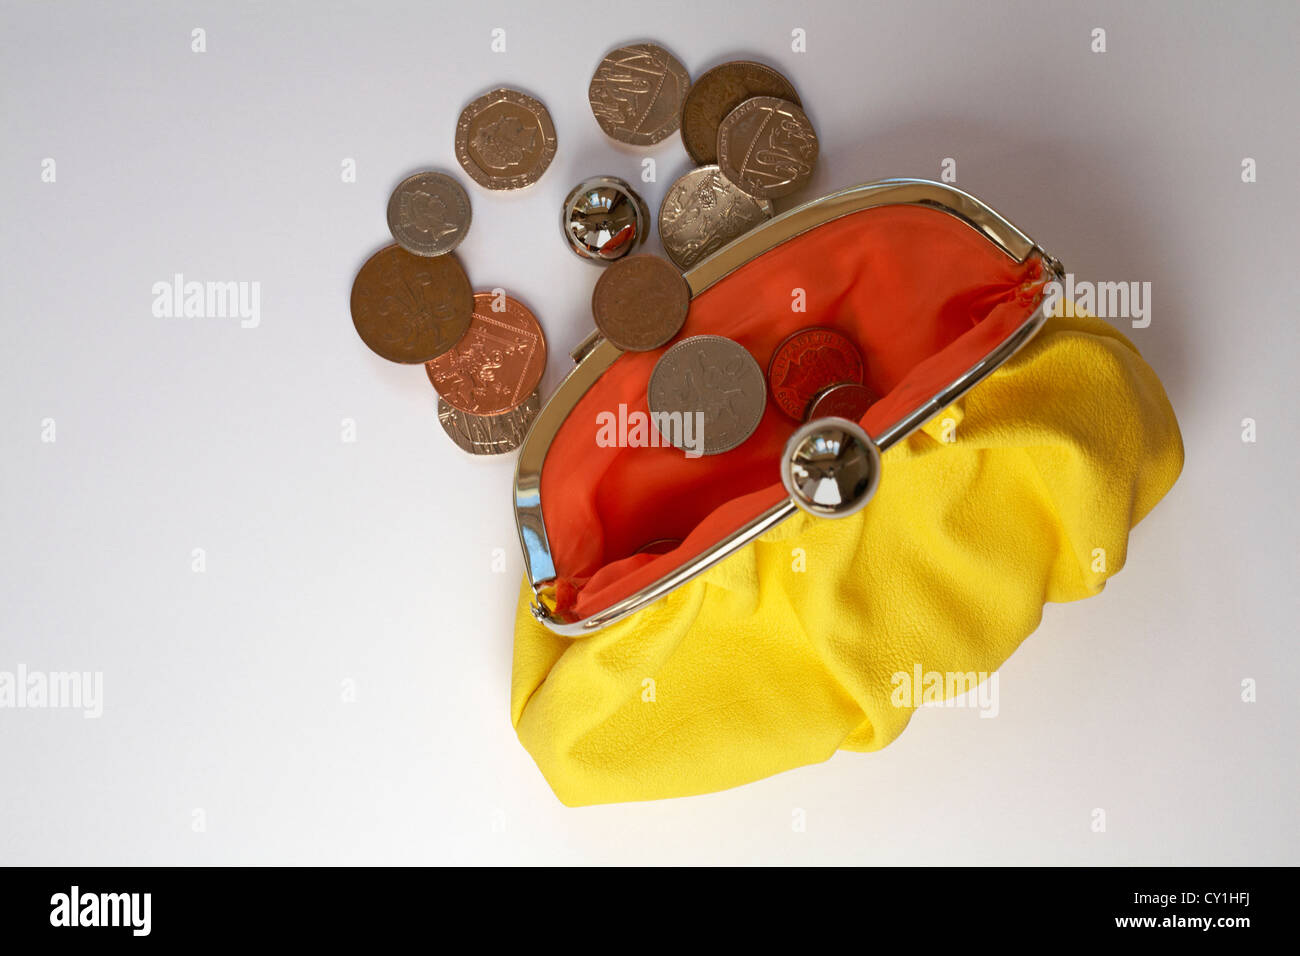 Kleingeld fallen aus gelben Geldbörse mit Orange farbigen innen isoliert auf weißem Hintergrund Stockfoto